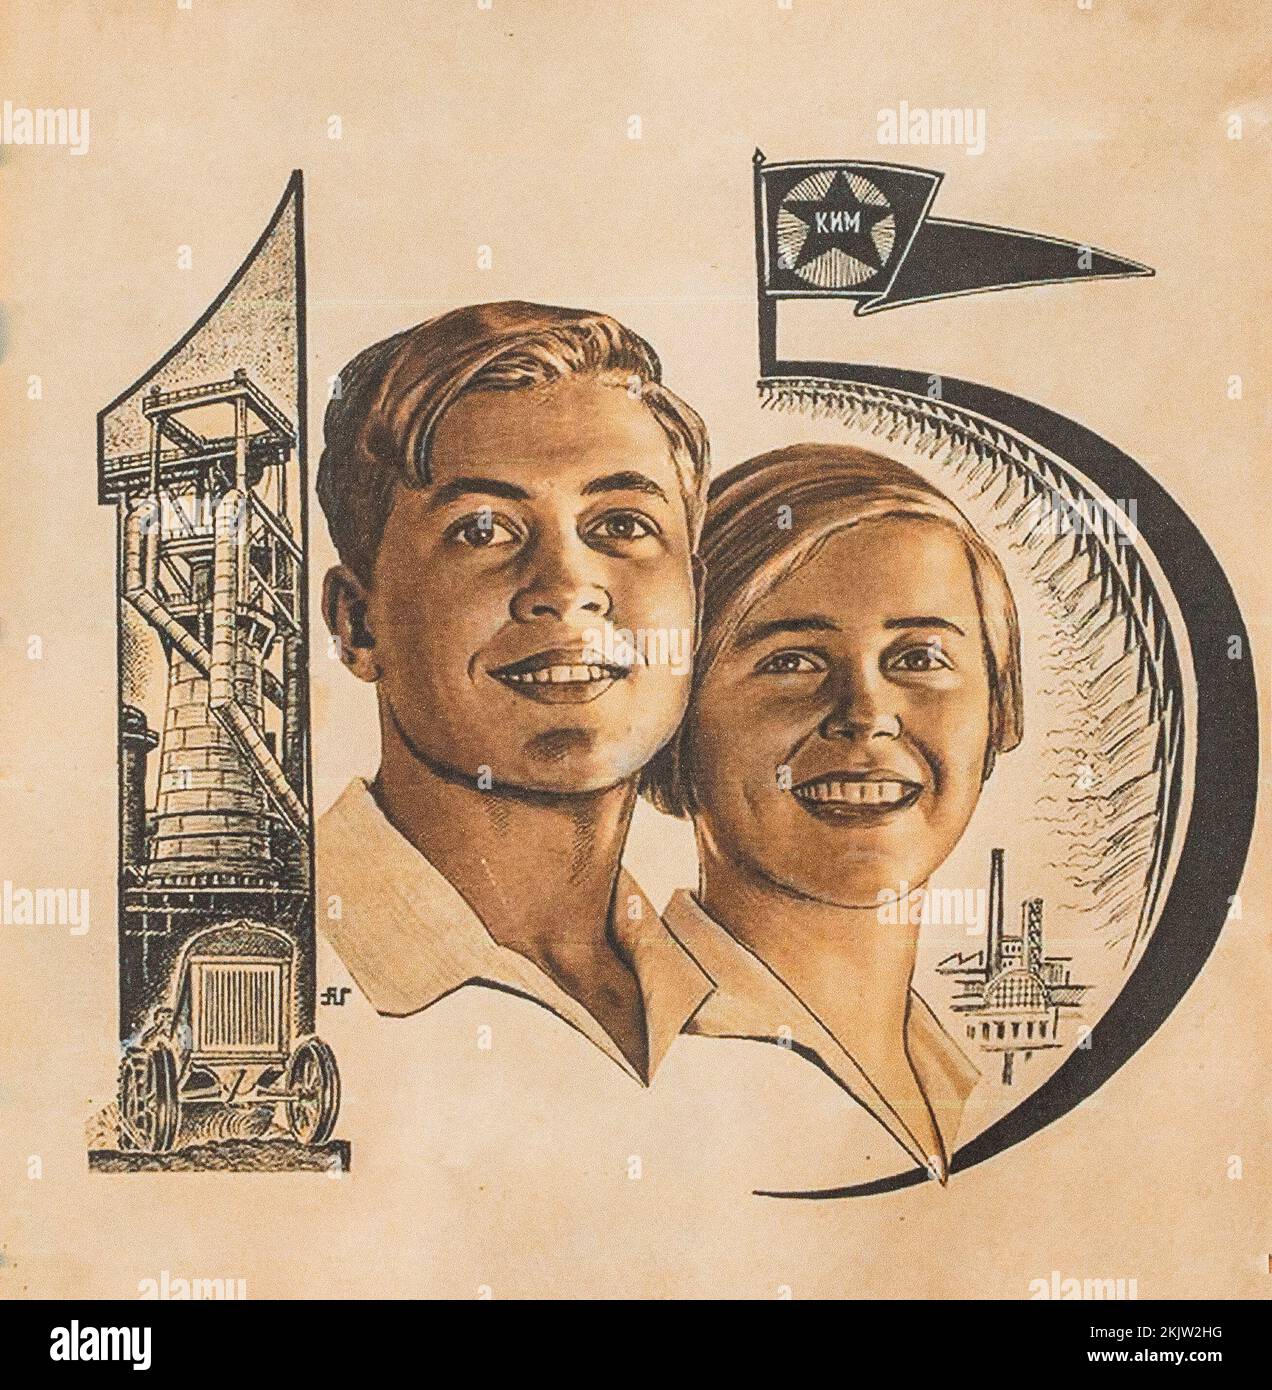 Cartel soviético dedicado a la juventud trabajadora. Medio de agitación y propaganda que afecta la conciencia y el estado de ánimo de las personas. Foto de stock